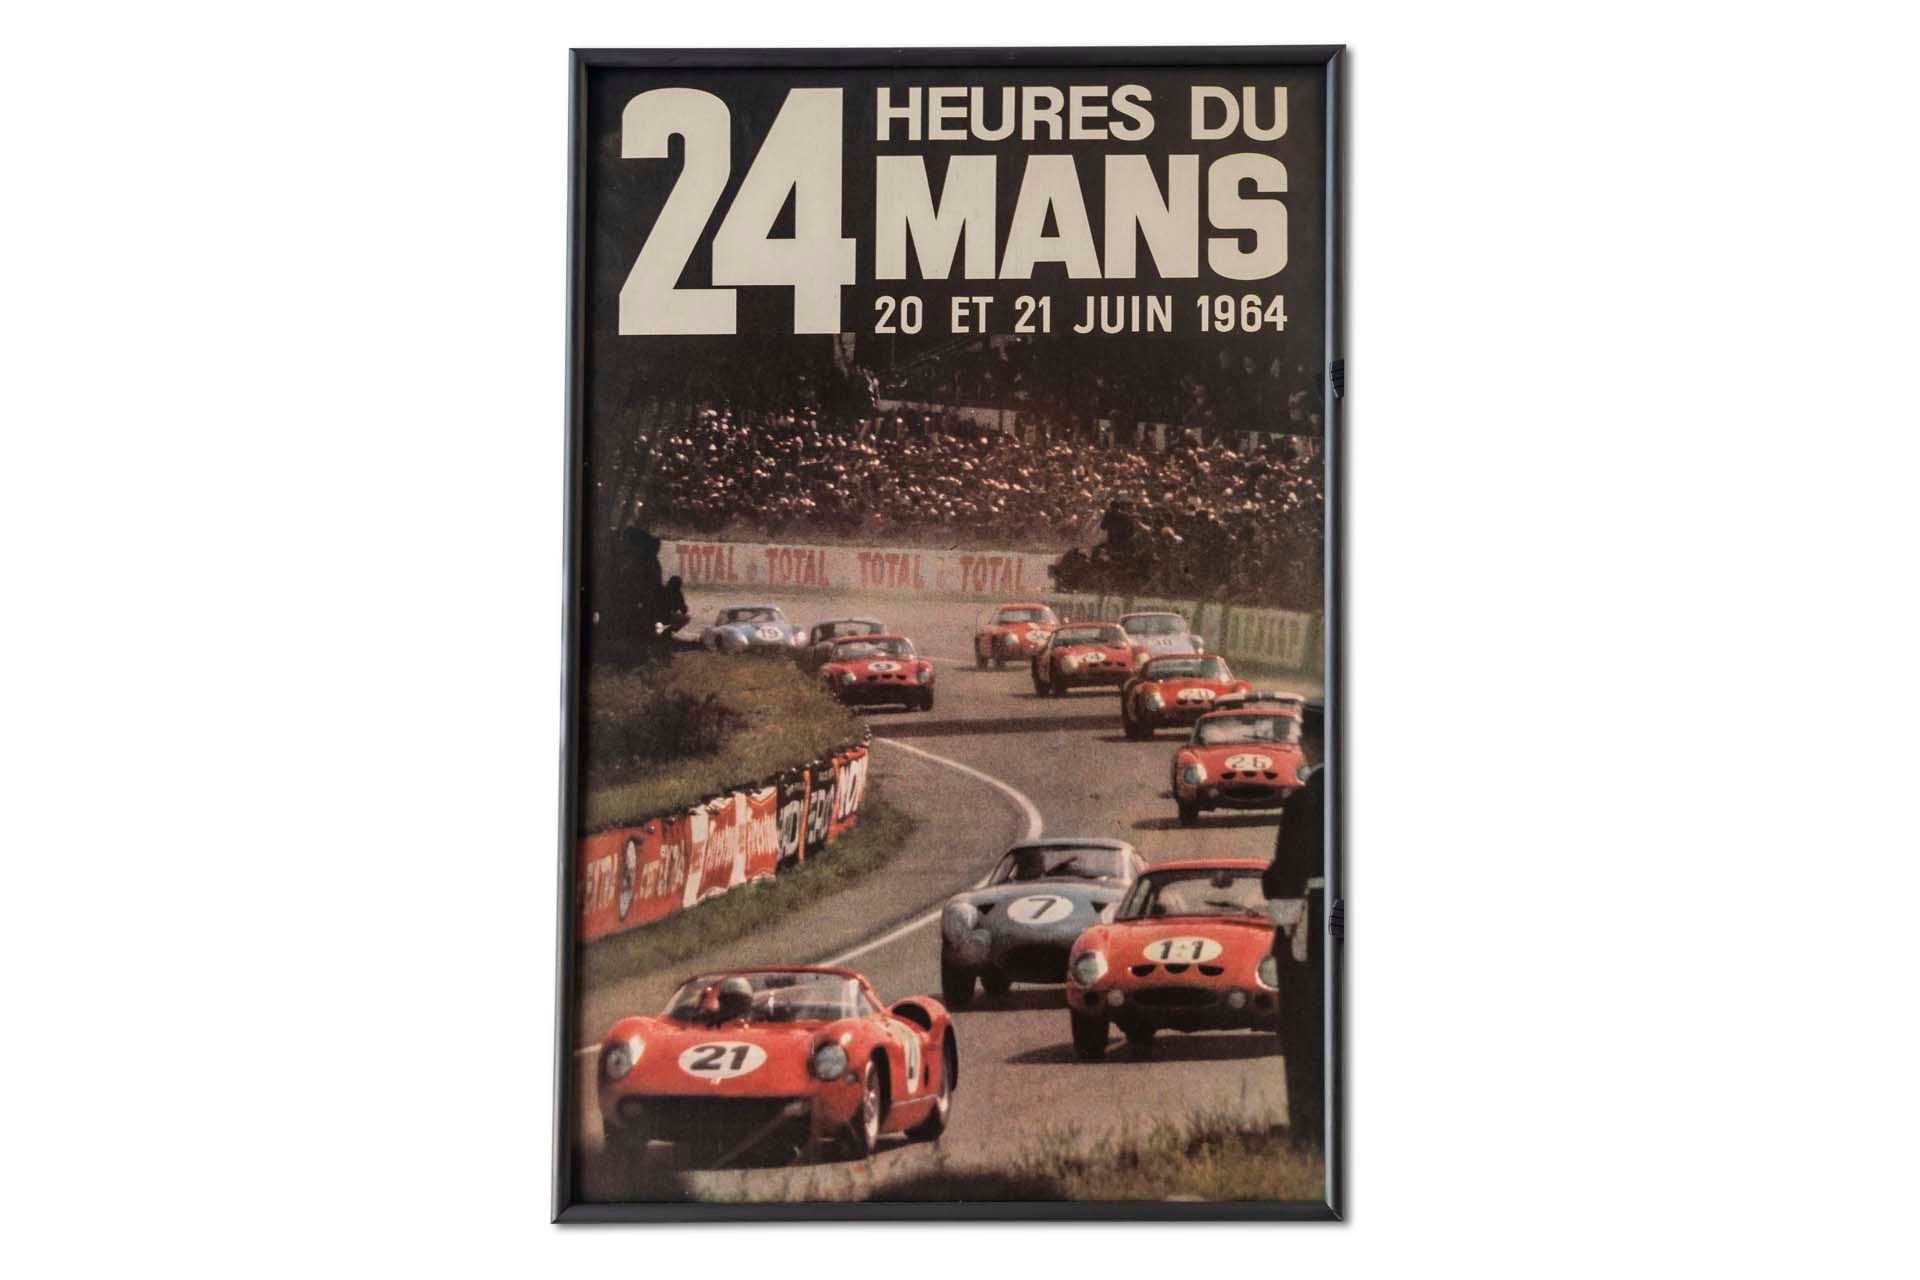 For Sale Framed Original '1964 24 heures du Mans' Event Poster